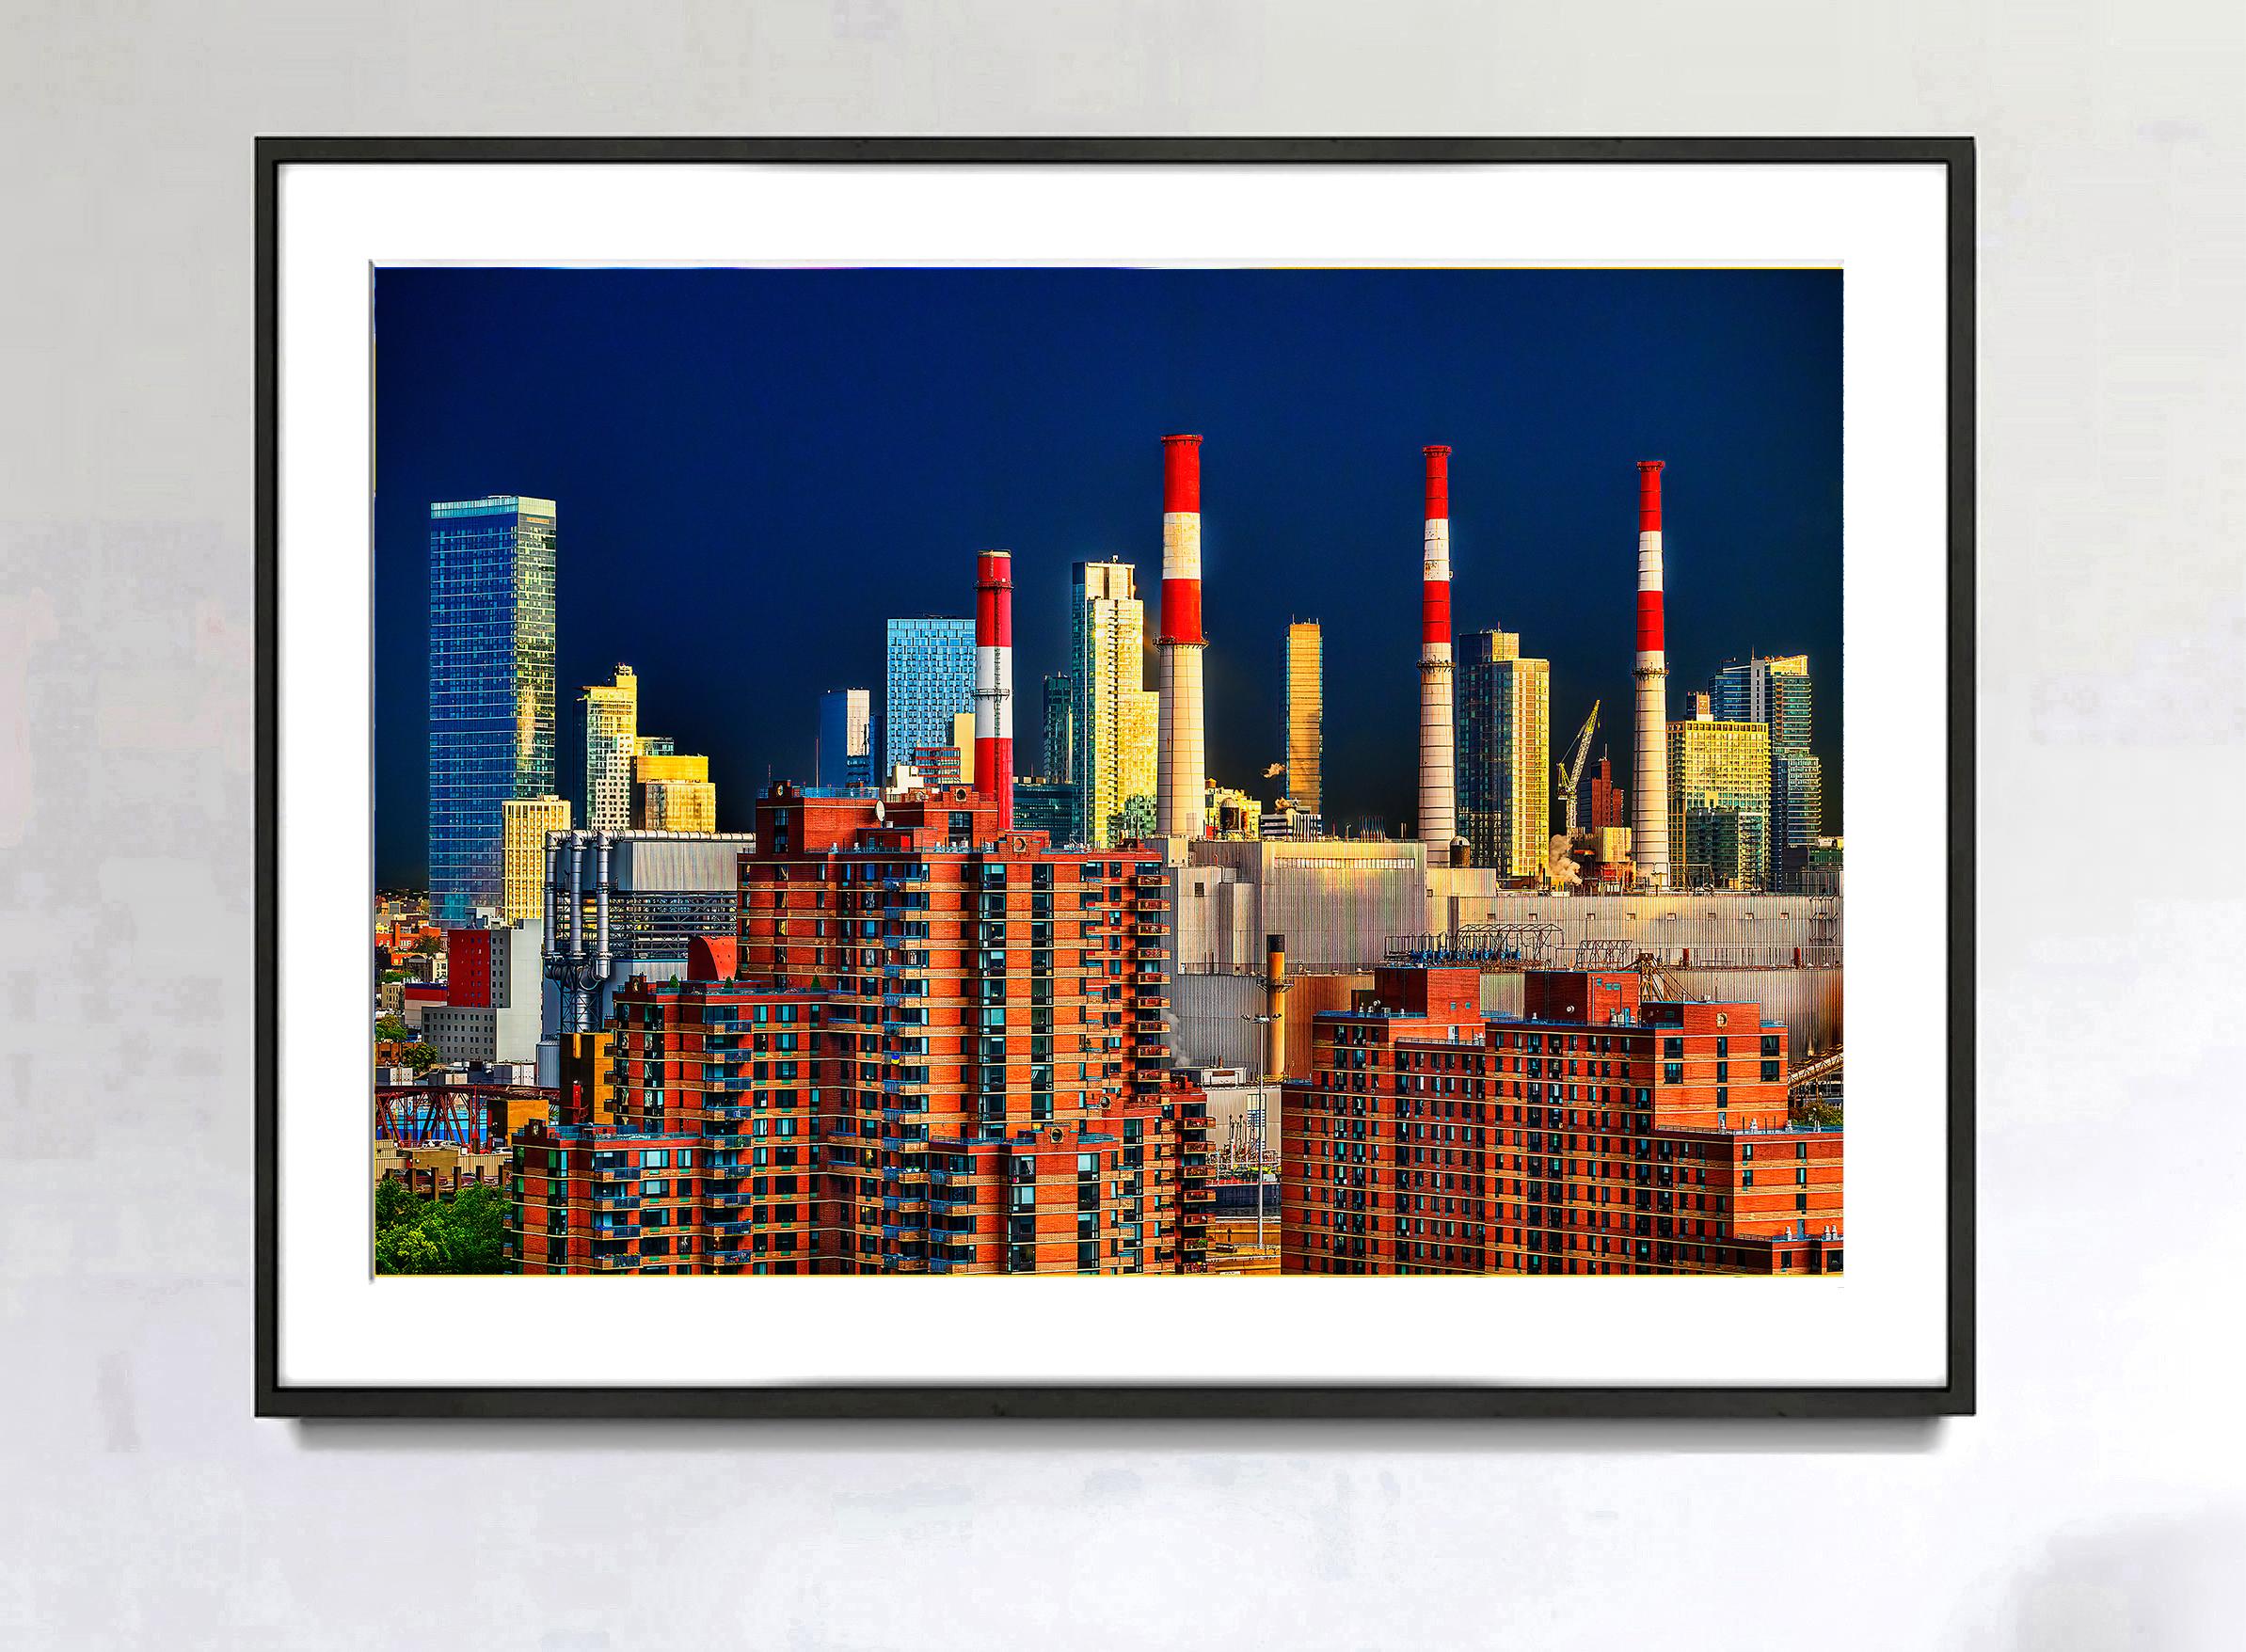  Eine neue Skyline ist geboren –  Manhattan Queens Skyline von Manhattan  – Photograph von Mitchell Funk